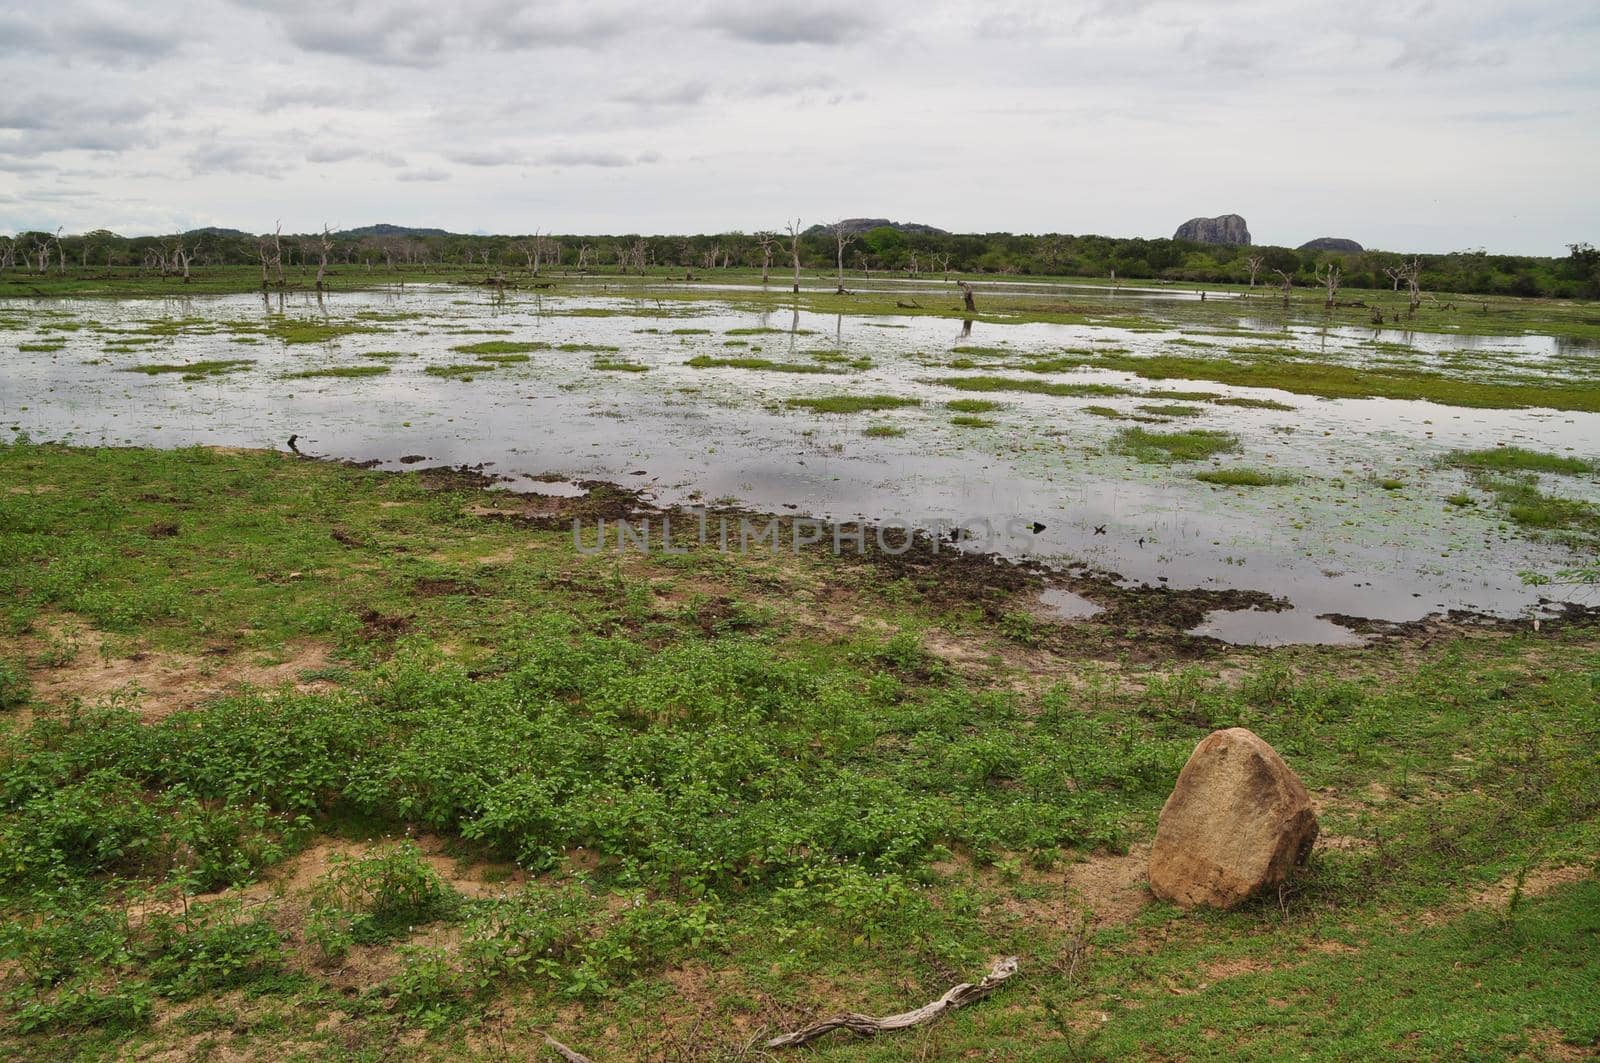 A pond in Yala National Park, Sri Lanka.